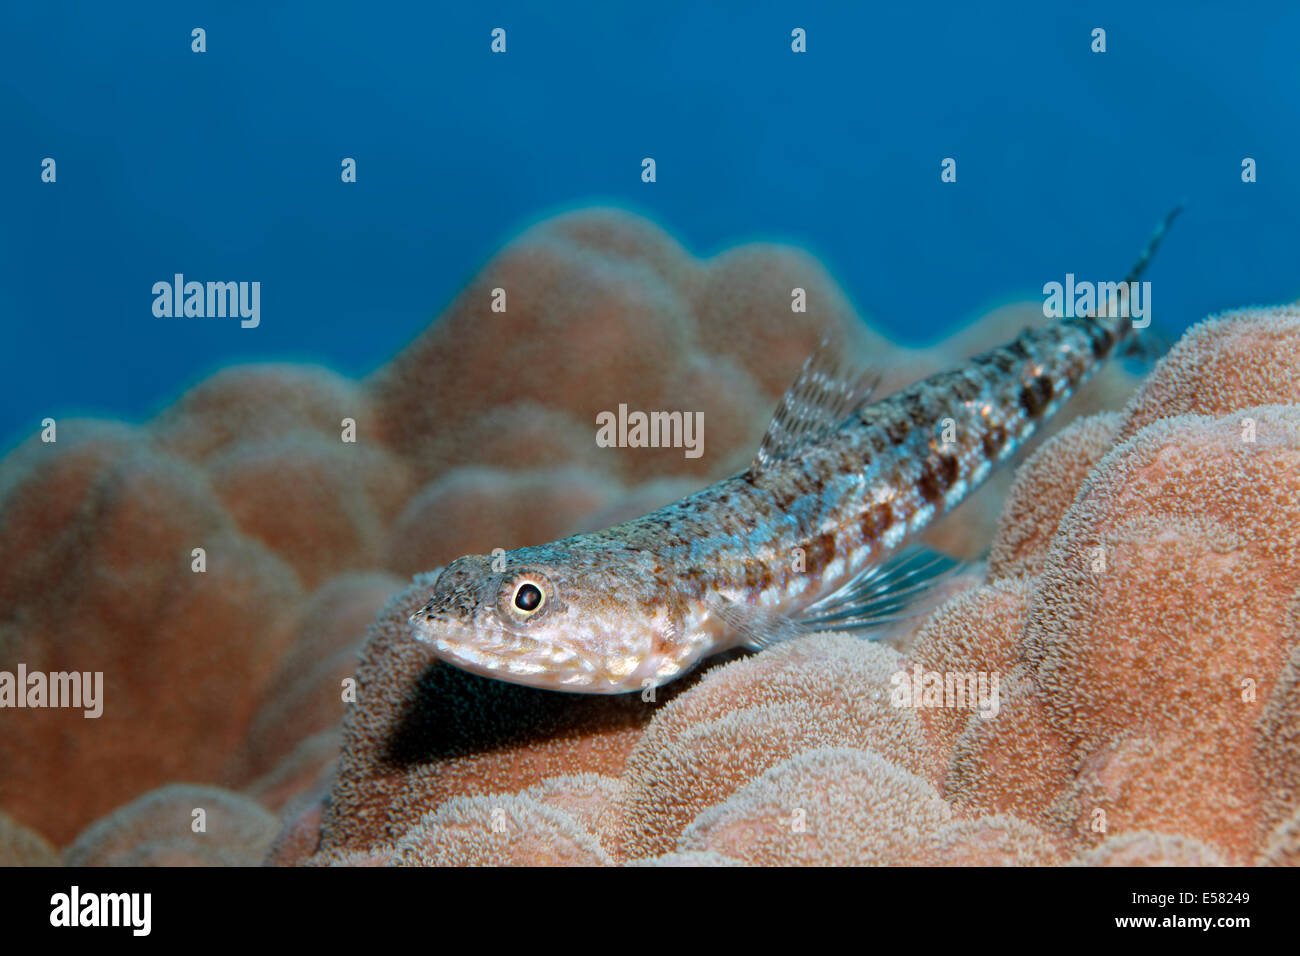 Lizardfish panachée (Synodus variegatus) sur les coraux durs, Red Sea, Egypt Banque D'Images